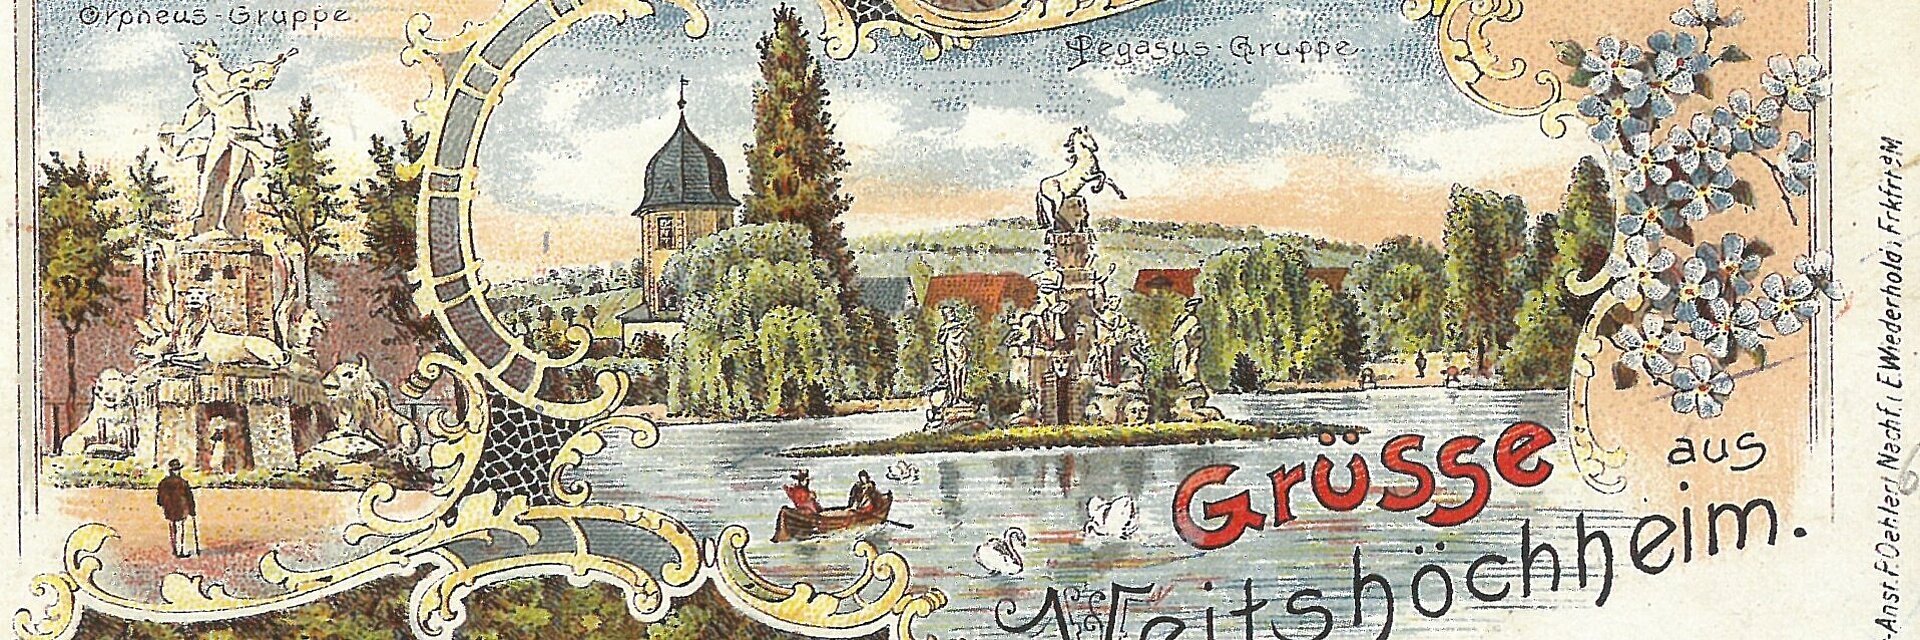 Historische Ansichtskarte des Rokokogartens